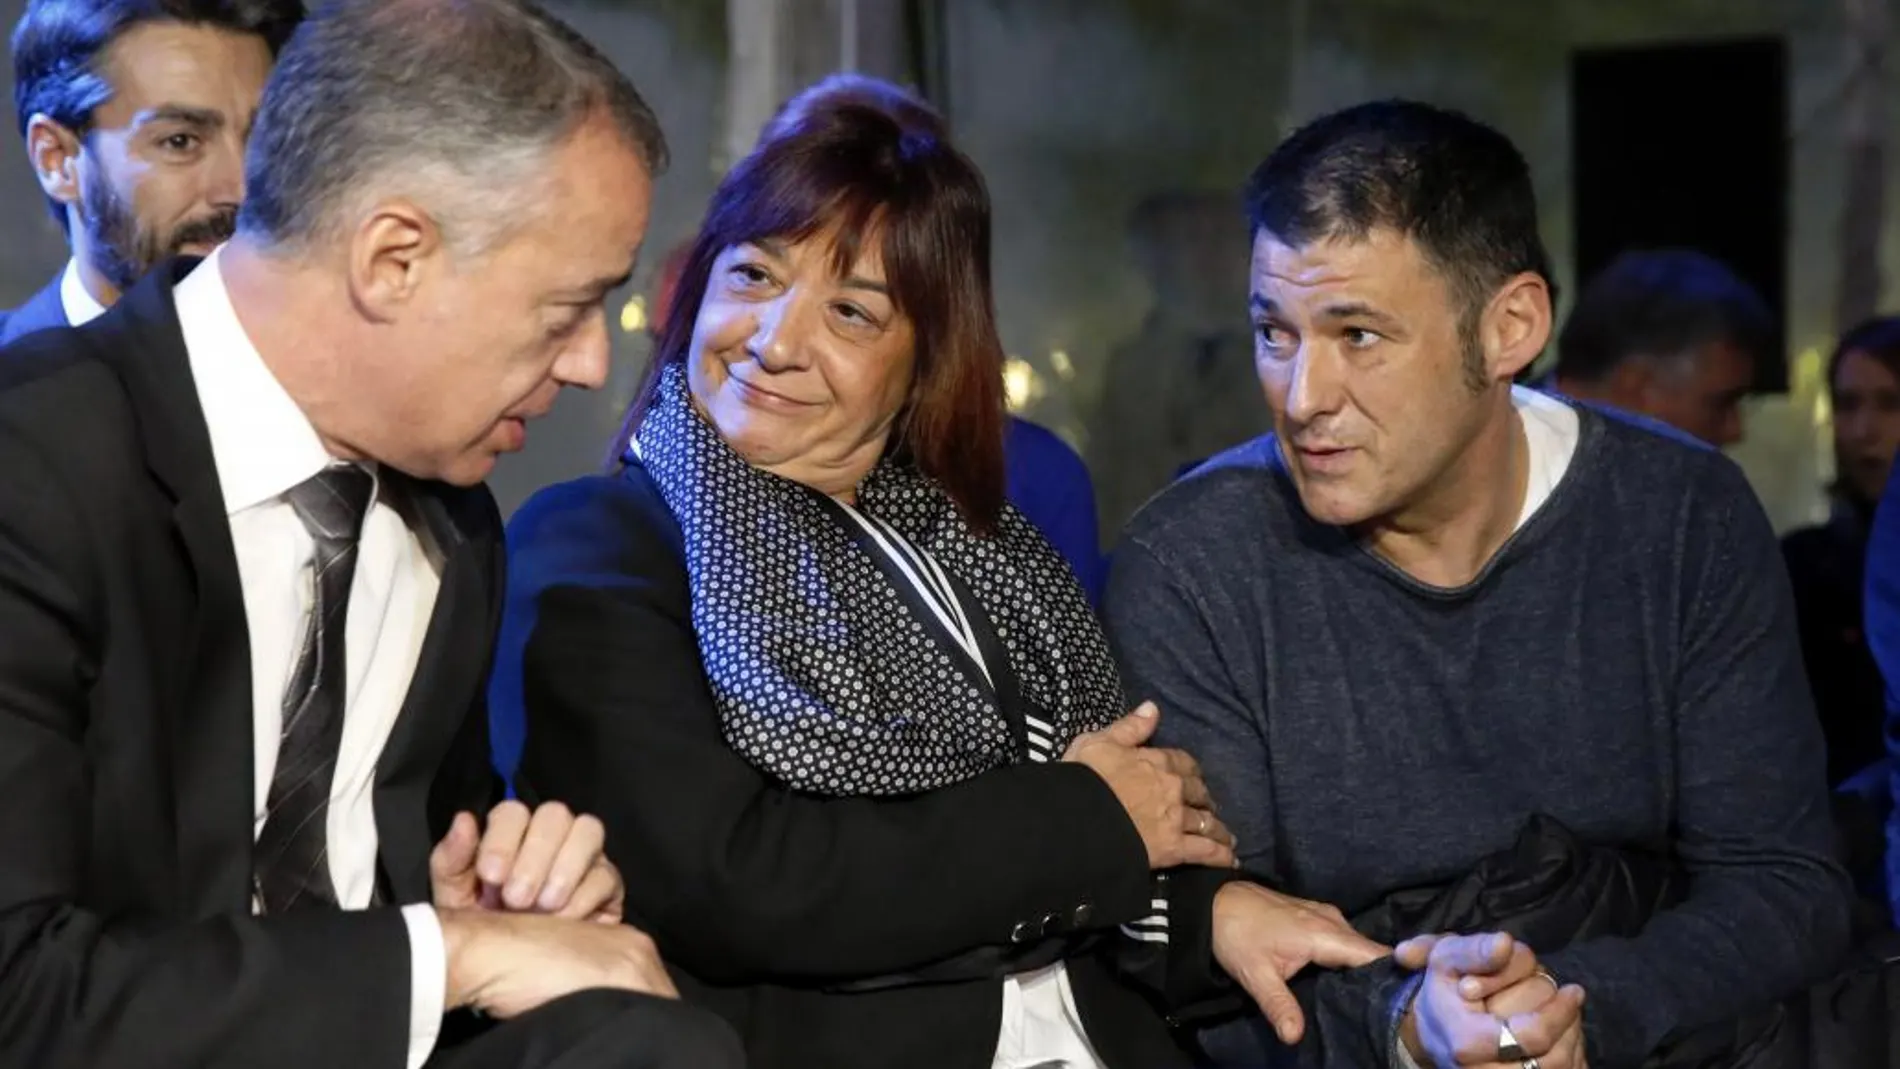 El lehendakari en funciones, Iñigo Urkullu (i), conversa con varias víctimas de ETA entre ellas Dori Moreno cuyo padre falleció en un atentado de ETA